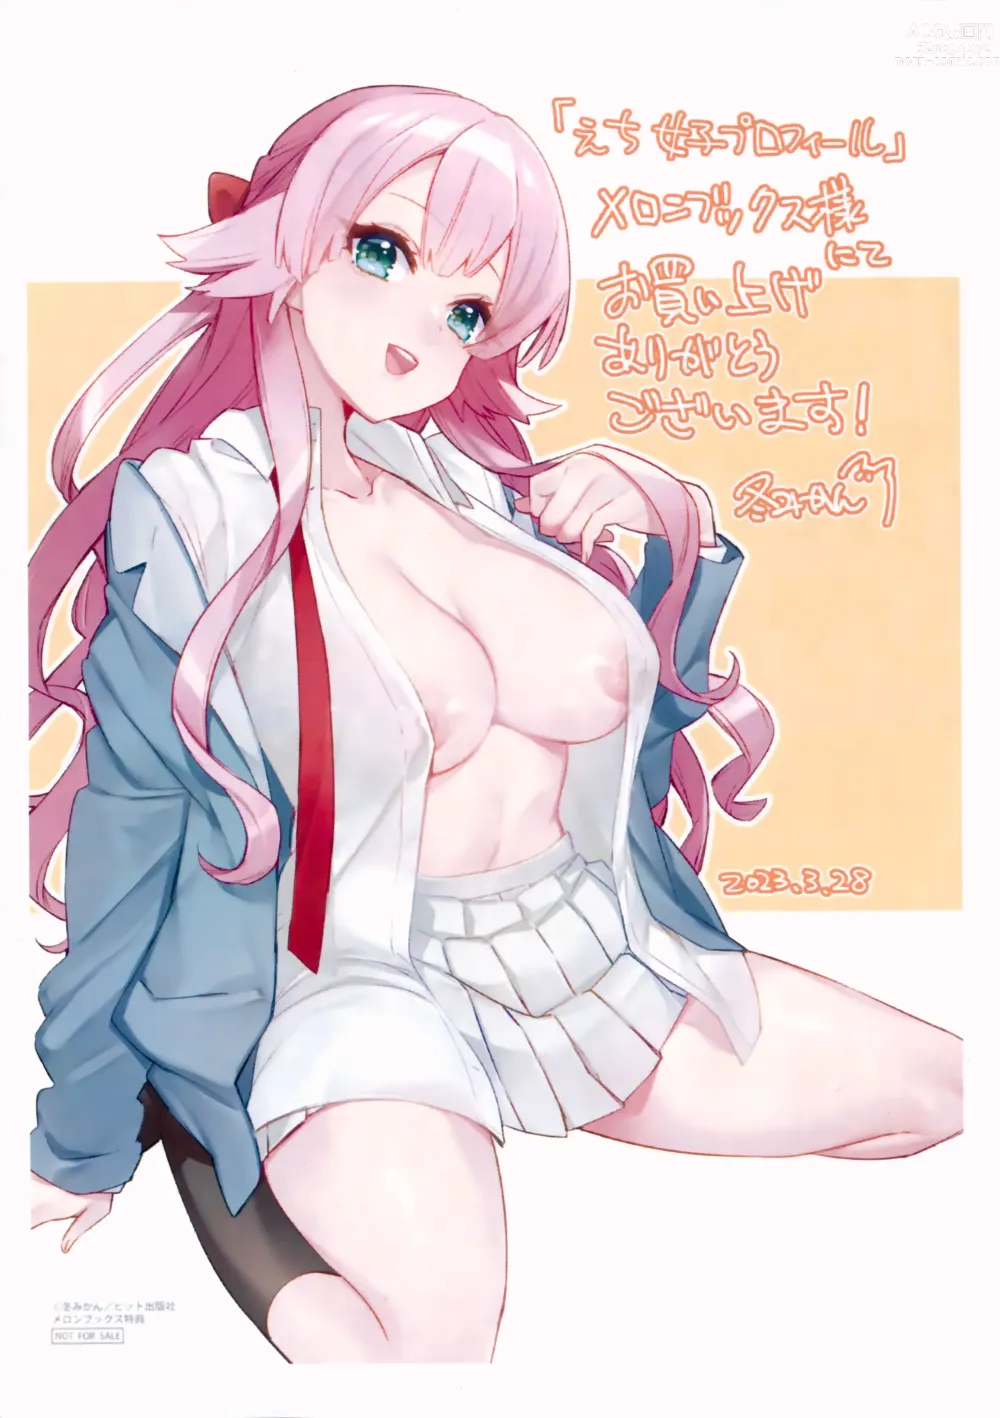 Page 203 of manga Echijoshi Profile - H Girl Profile